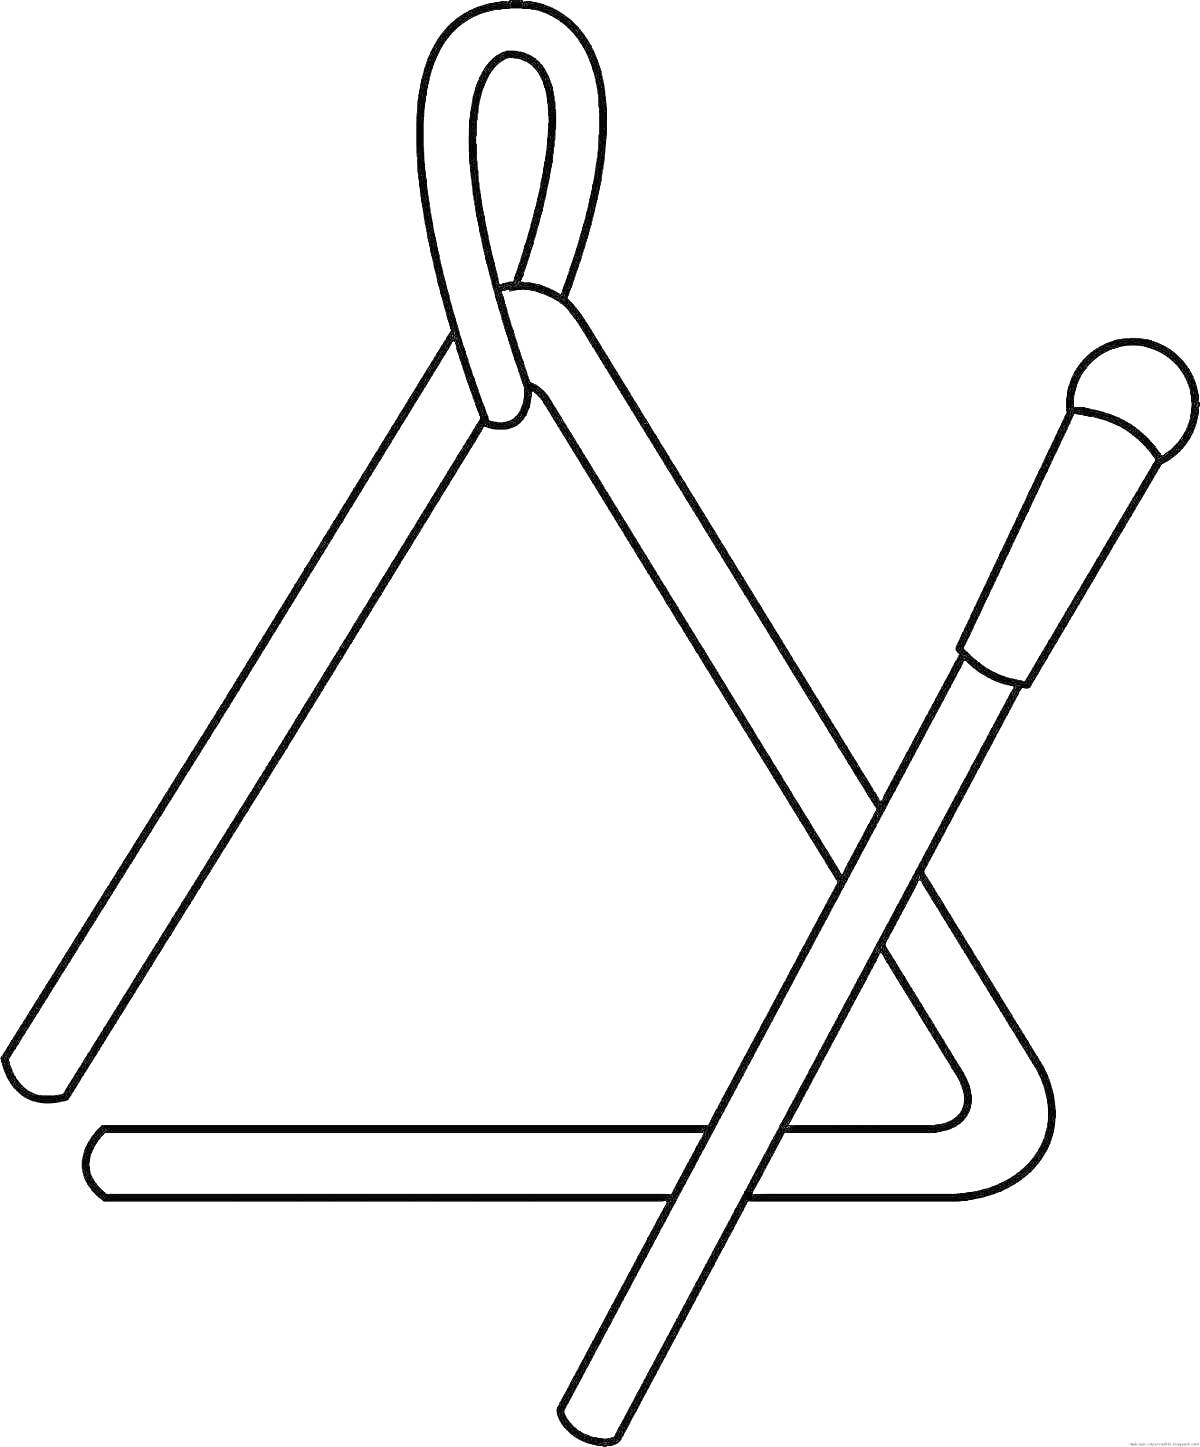 Раскраска Треугольник с палочкой